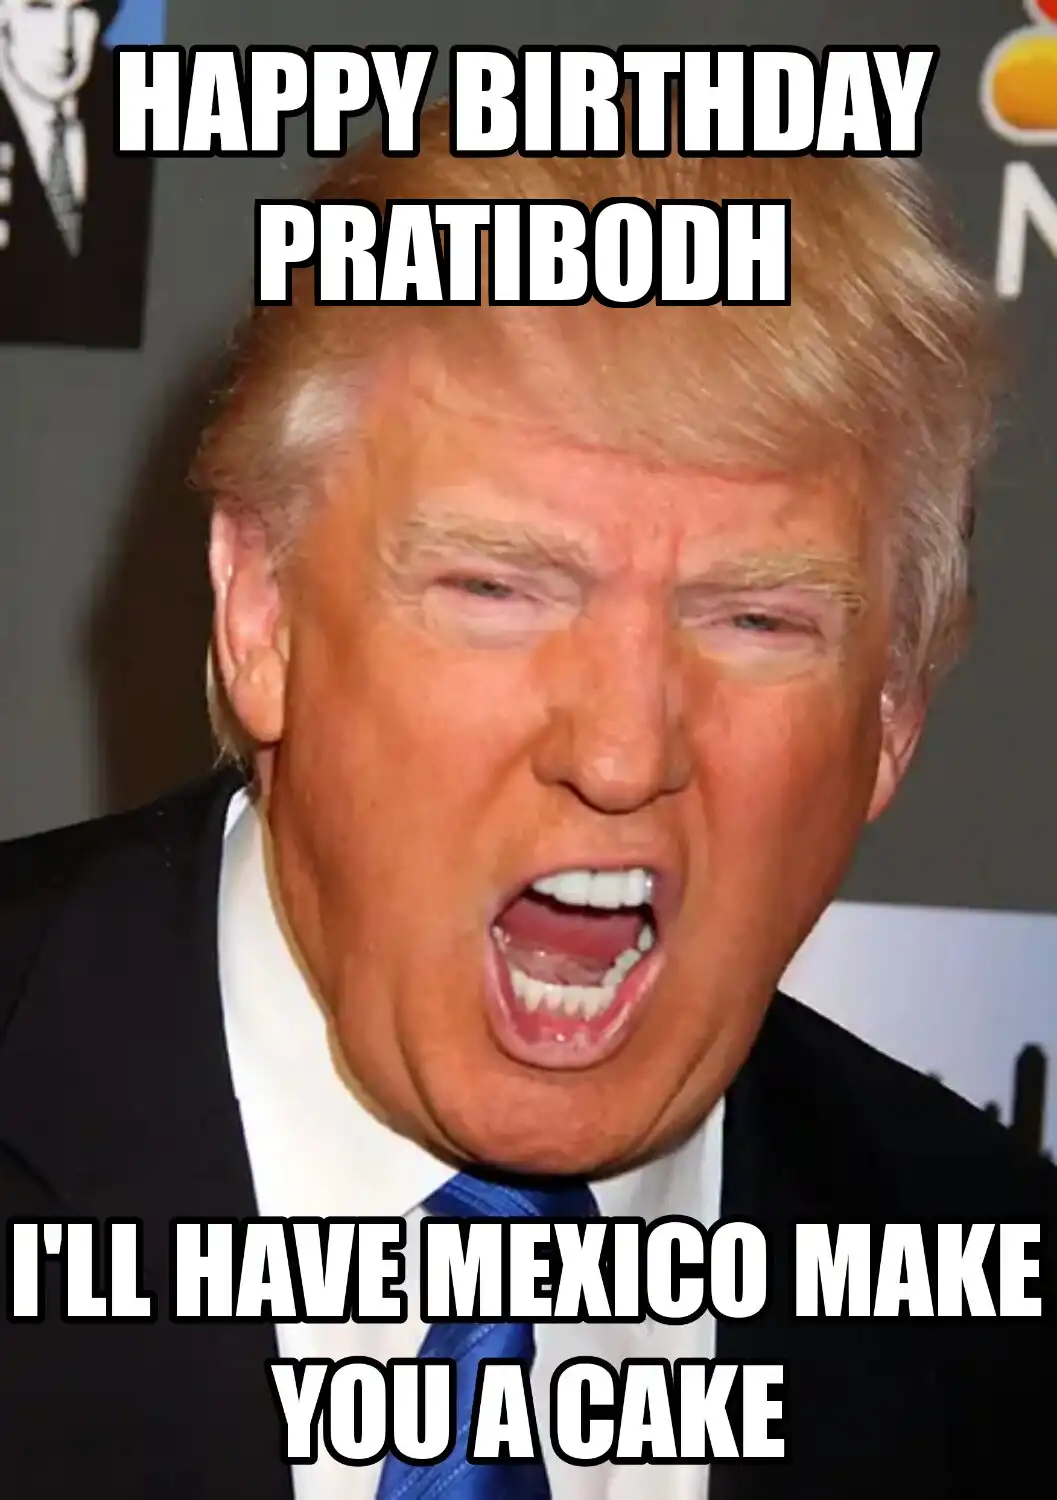 Happy Birthday Pratibodh Mexico Make You A Cake Meme